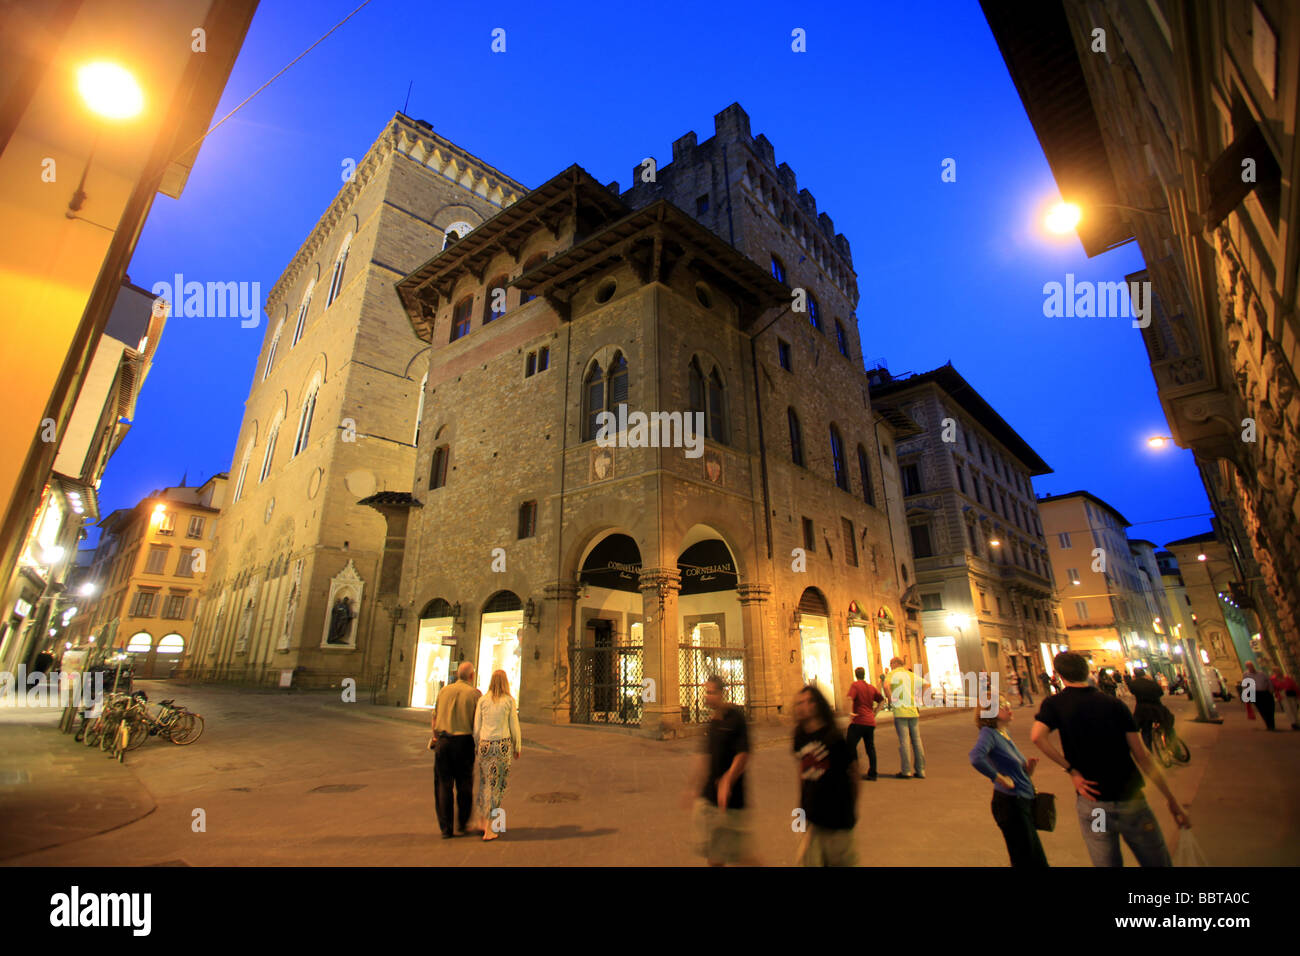 Via Calimala, Florence,Tuscany,Italy Stock Photo - Alamy